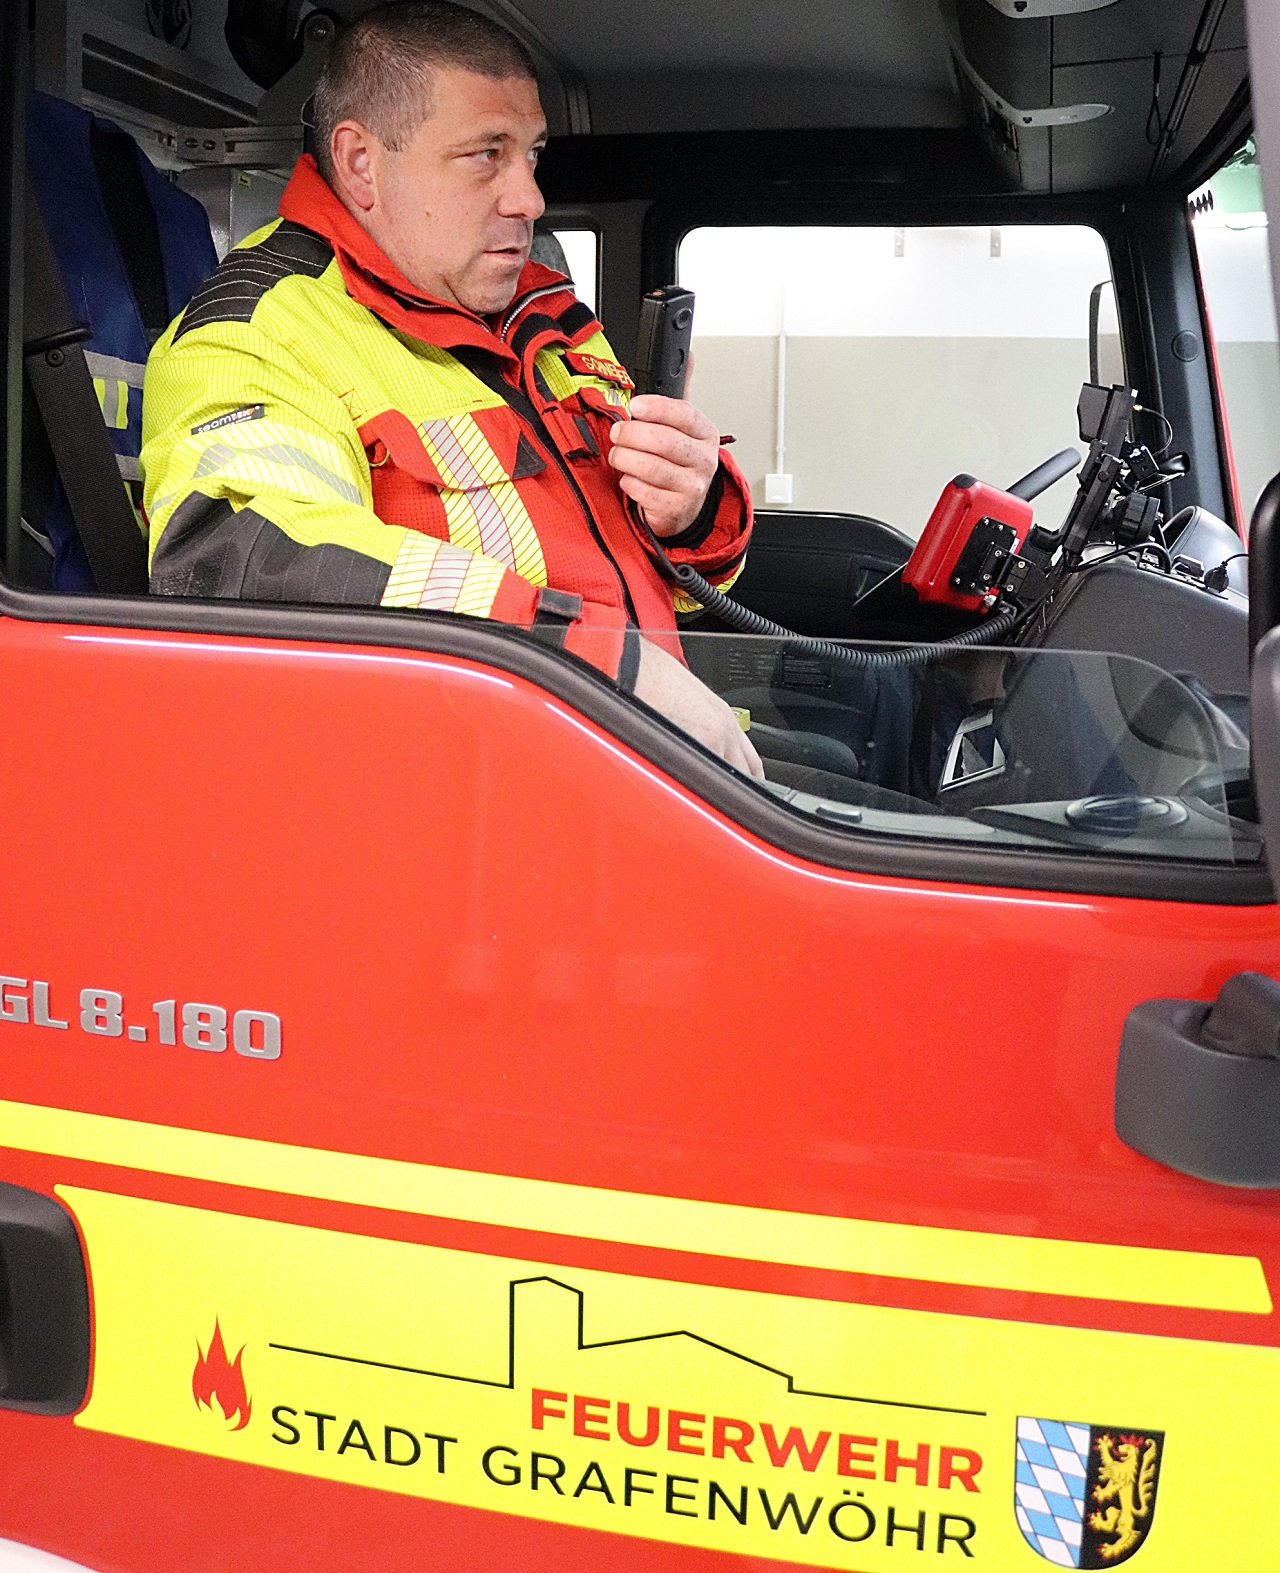 Freiwillige Feuerwehr Hütten Stadt Grafenwöhr Neues Fahrzeug Einsatzbereit gemeldet Einweisung am Fahrzeug Bild Jürgen Masching